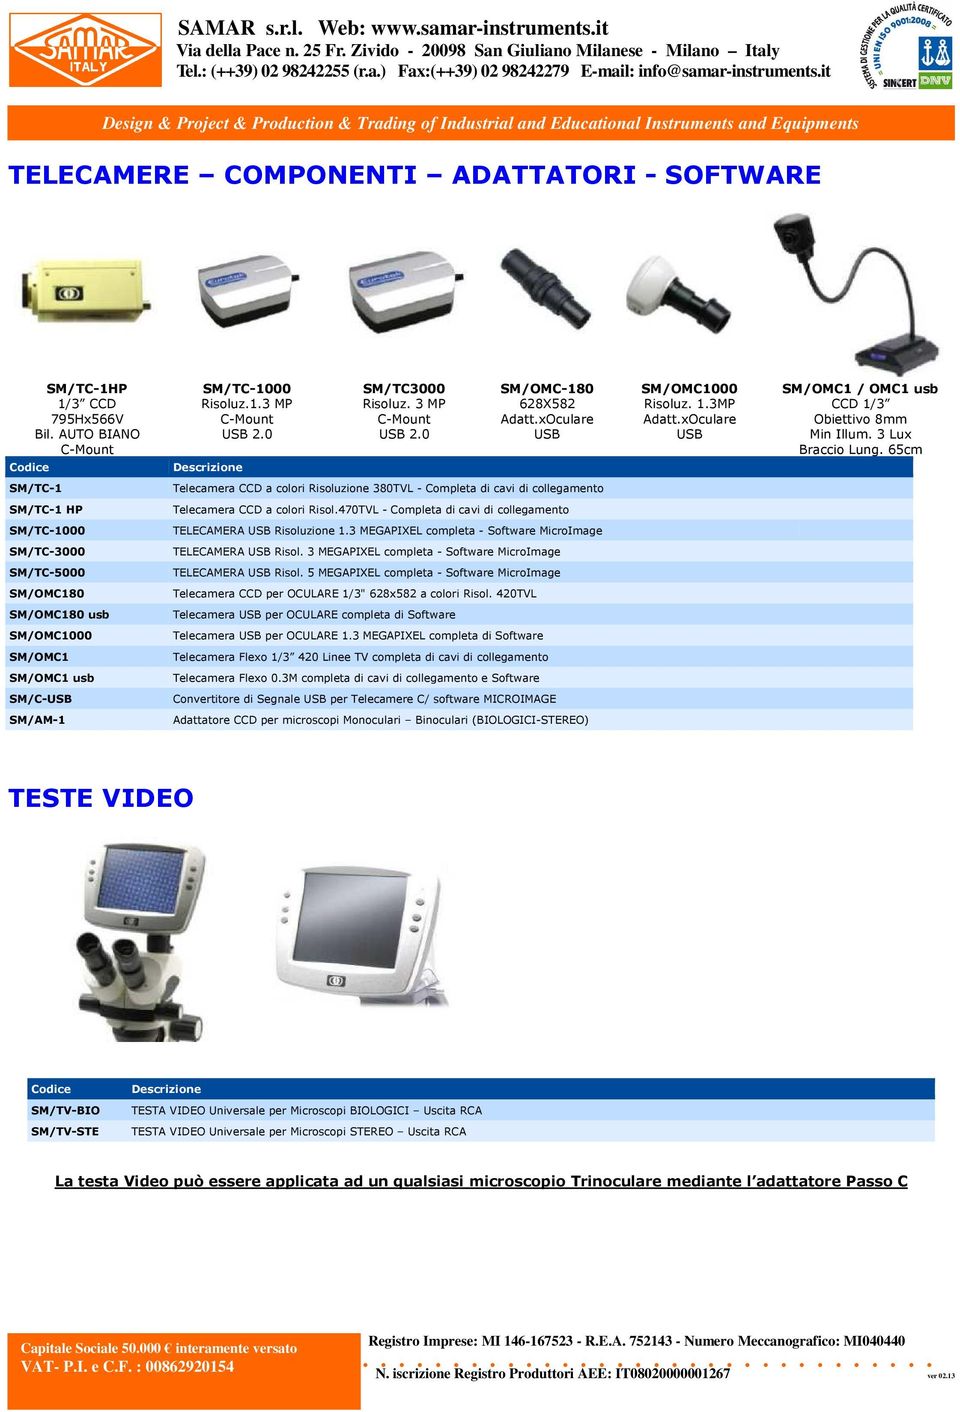 65cm SM/TC-1 SM/TC-1 HP SM/TC-1000 SM/TC-3000 SM/TC-5000 SM/OMC180 SM/OMC180 usb SM/OMC1000 SM/OMC1 SM/OMC1 usb SM/C-USB SM/AM-1 Telecamera CCD a colori Risoluzione 380TVL - Completa di cavi di